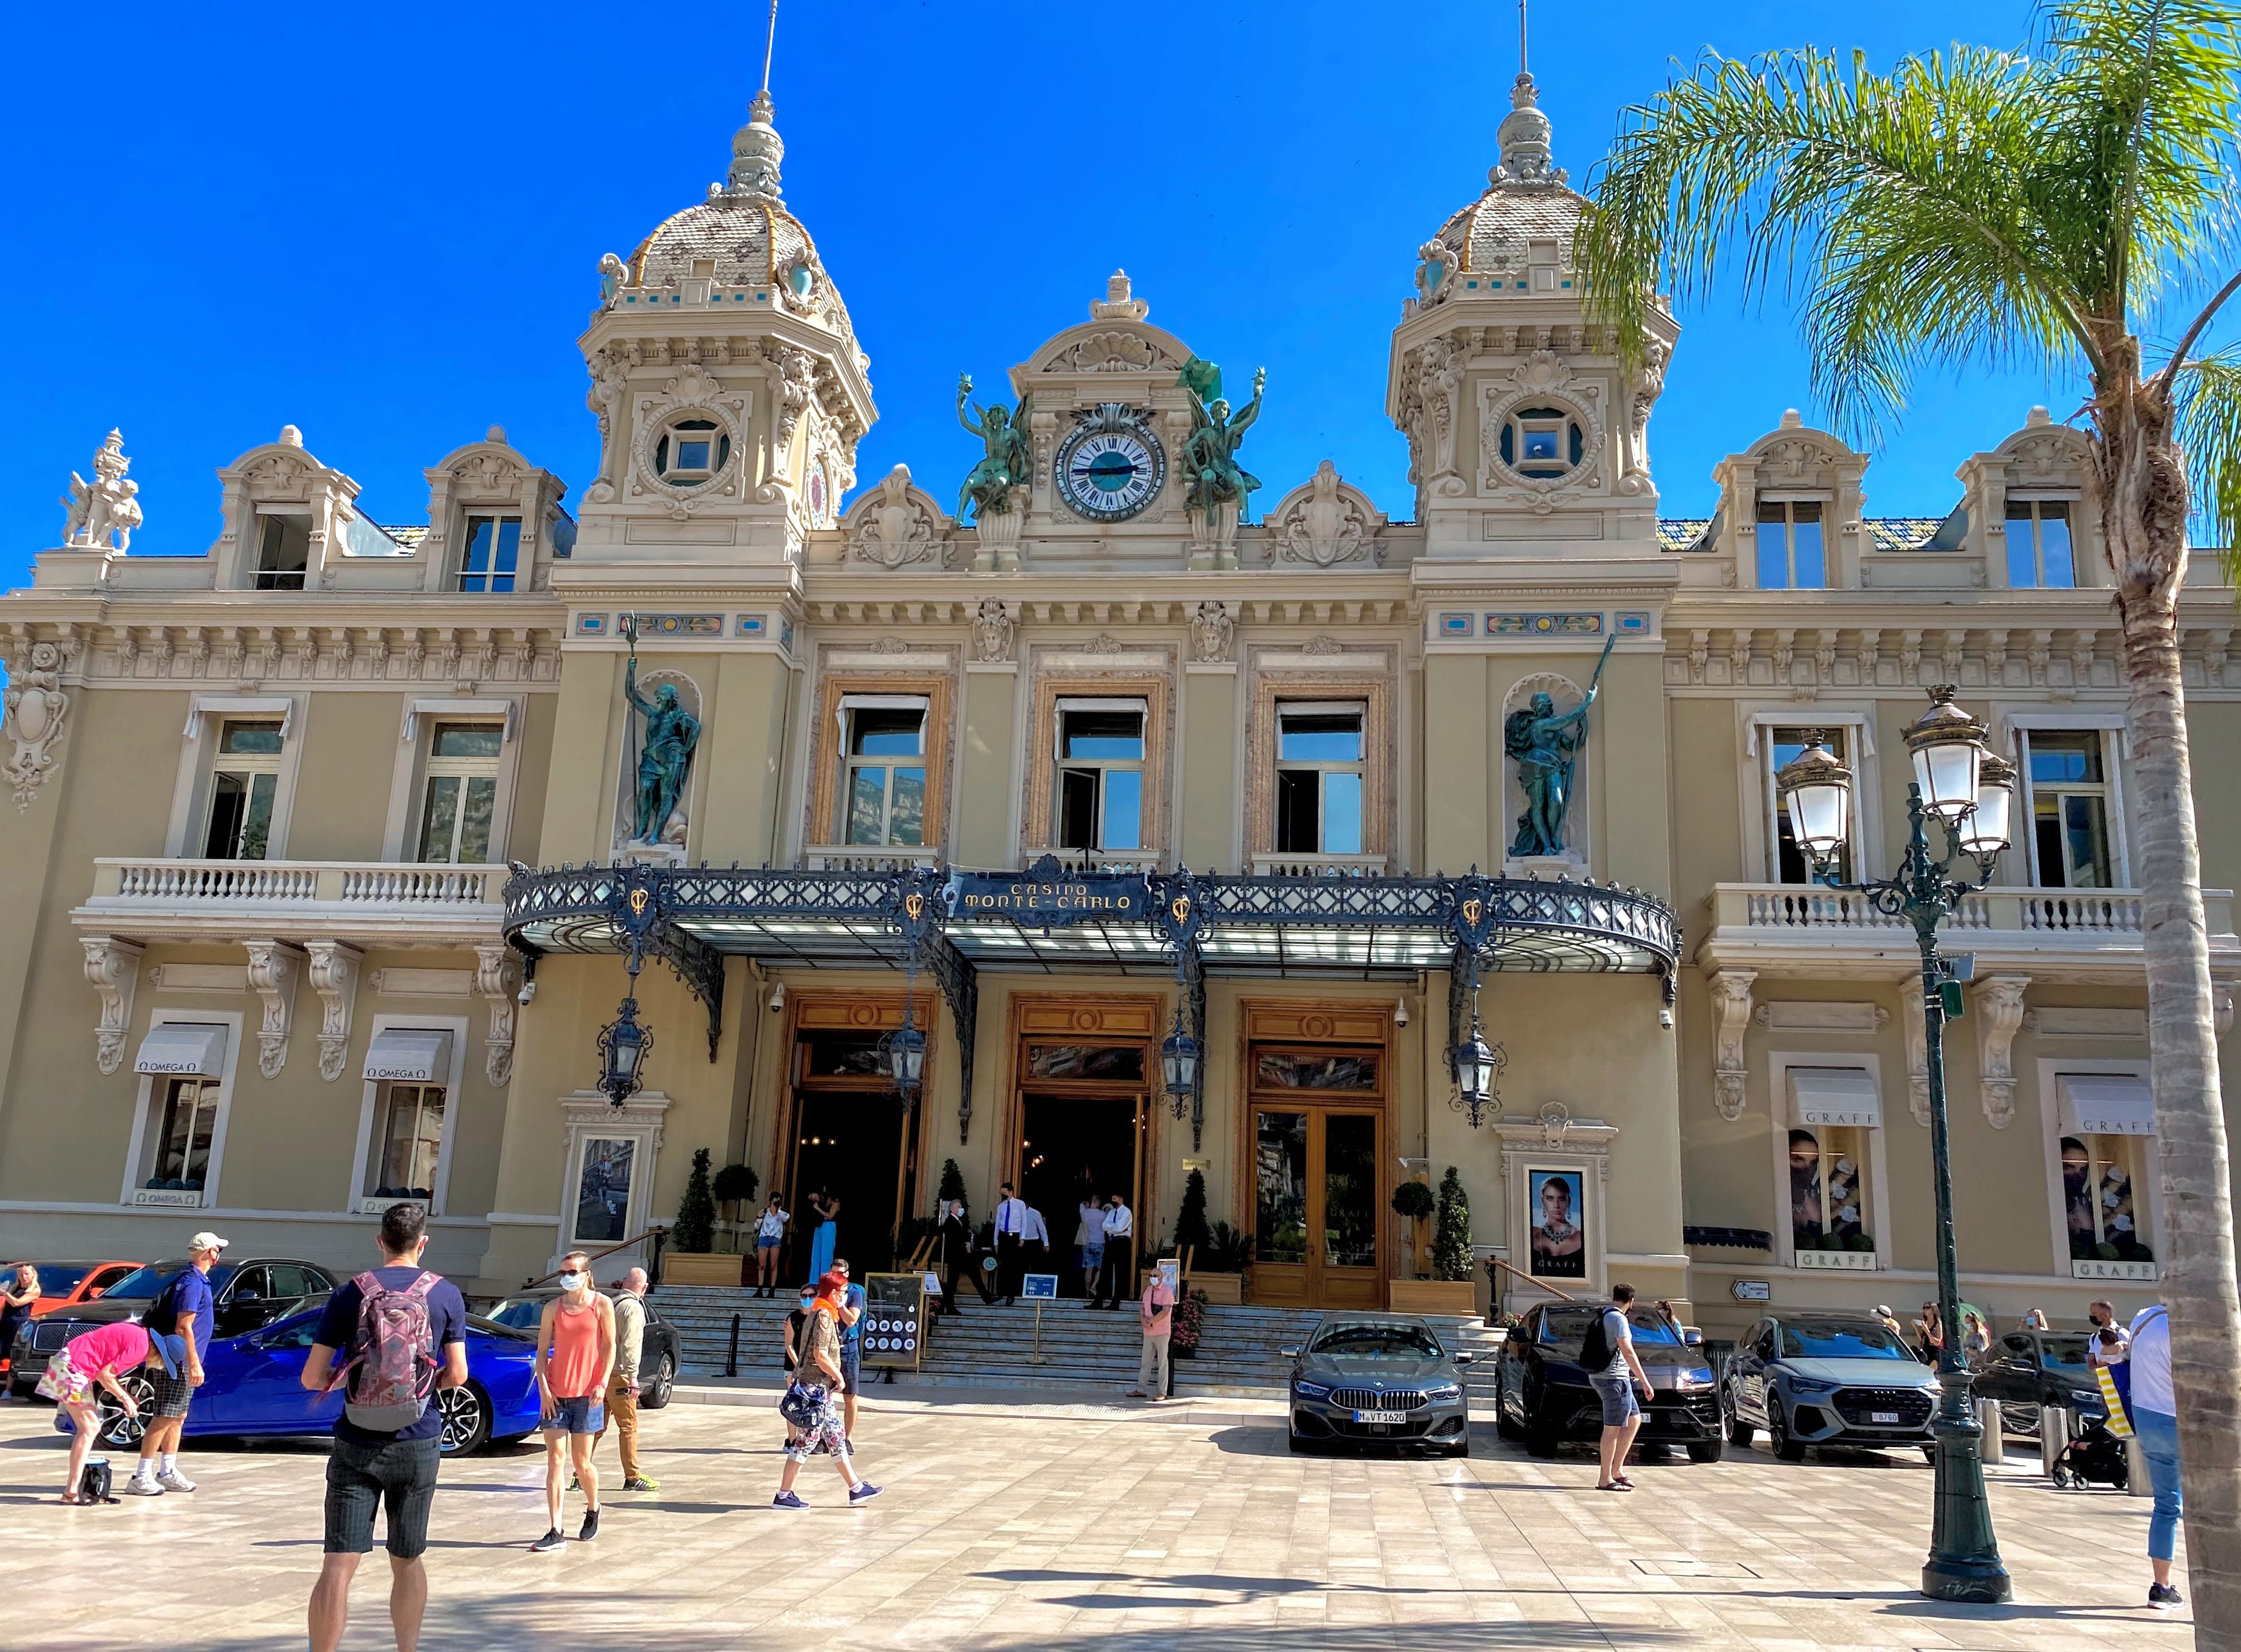 File:Monte Carlo Casino Monaco.jpg - Wikipedia